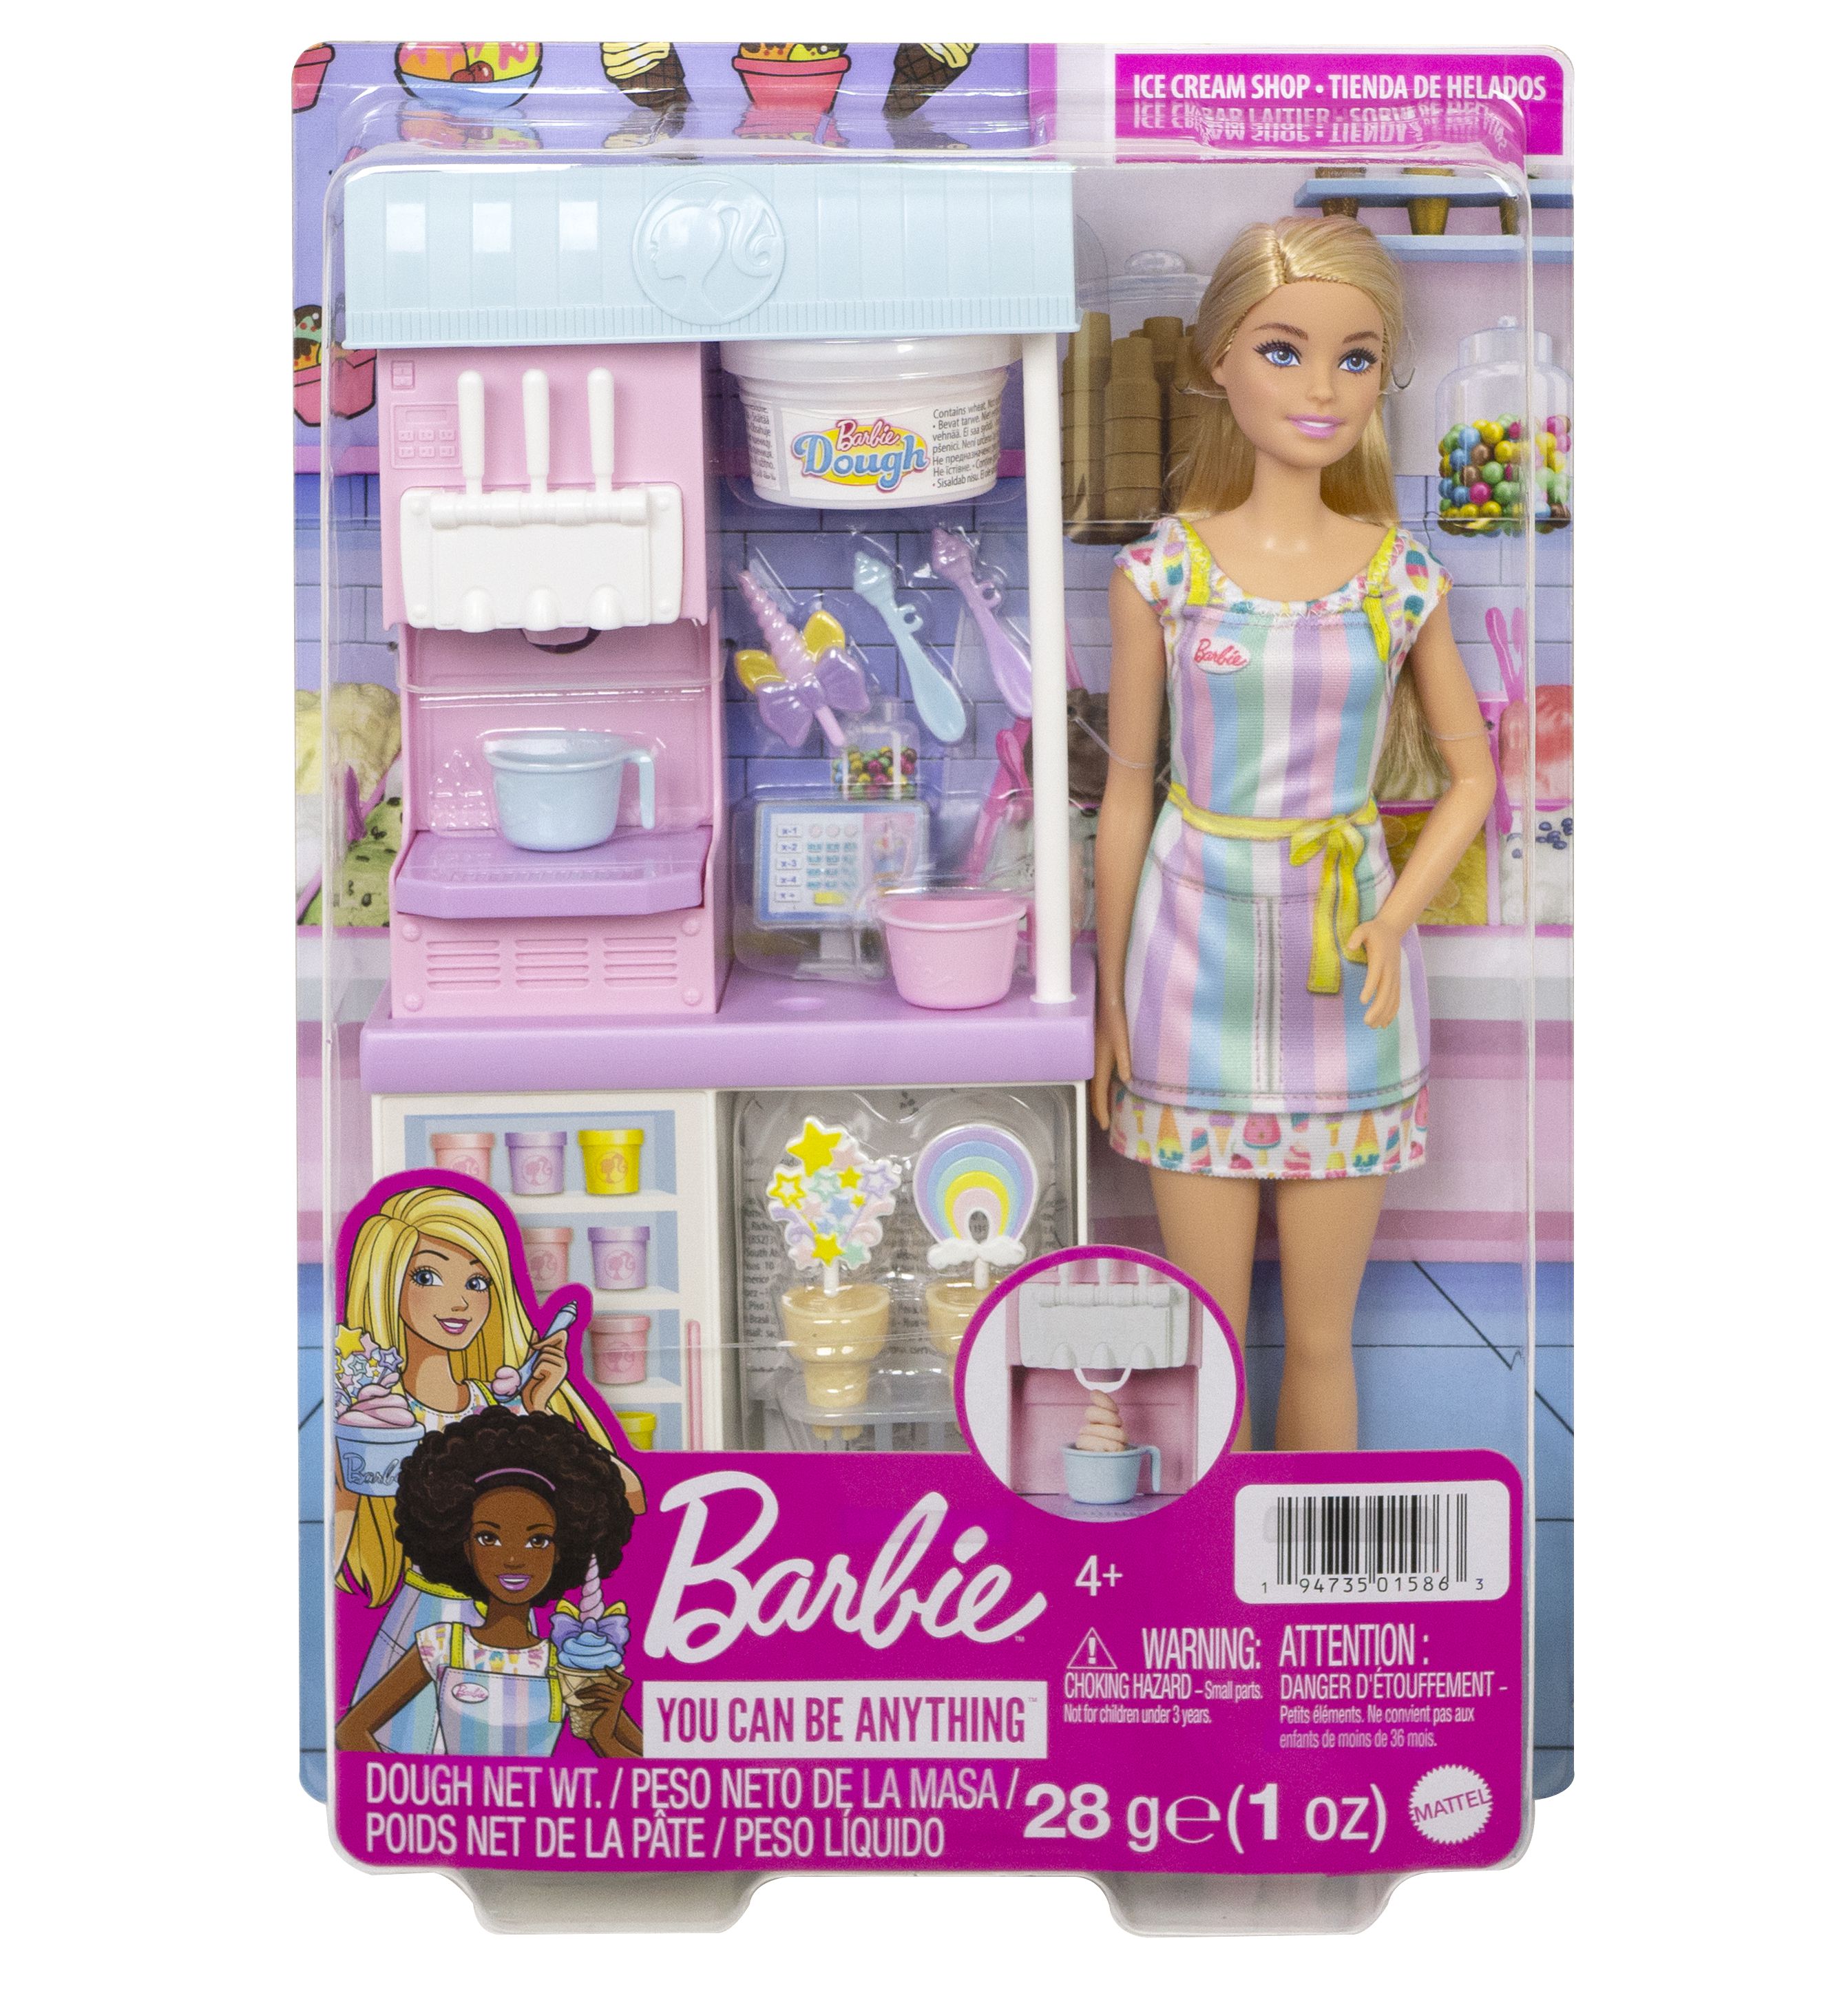 Sparen Sie 14 £ beim Barbie-Eisspielset von Tesco